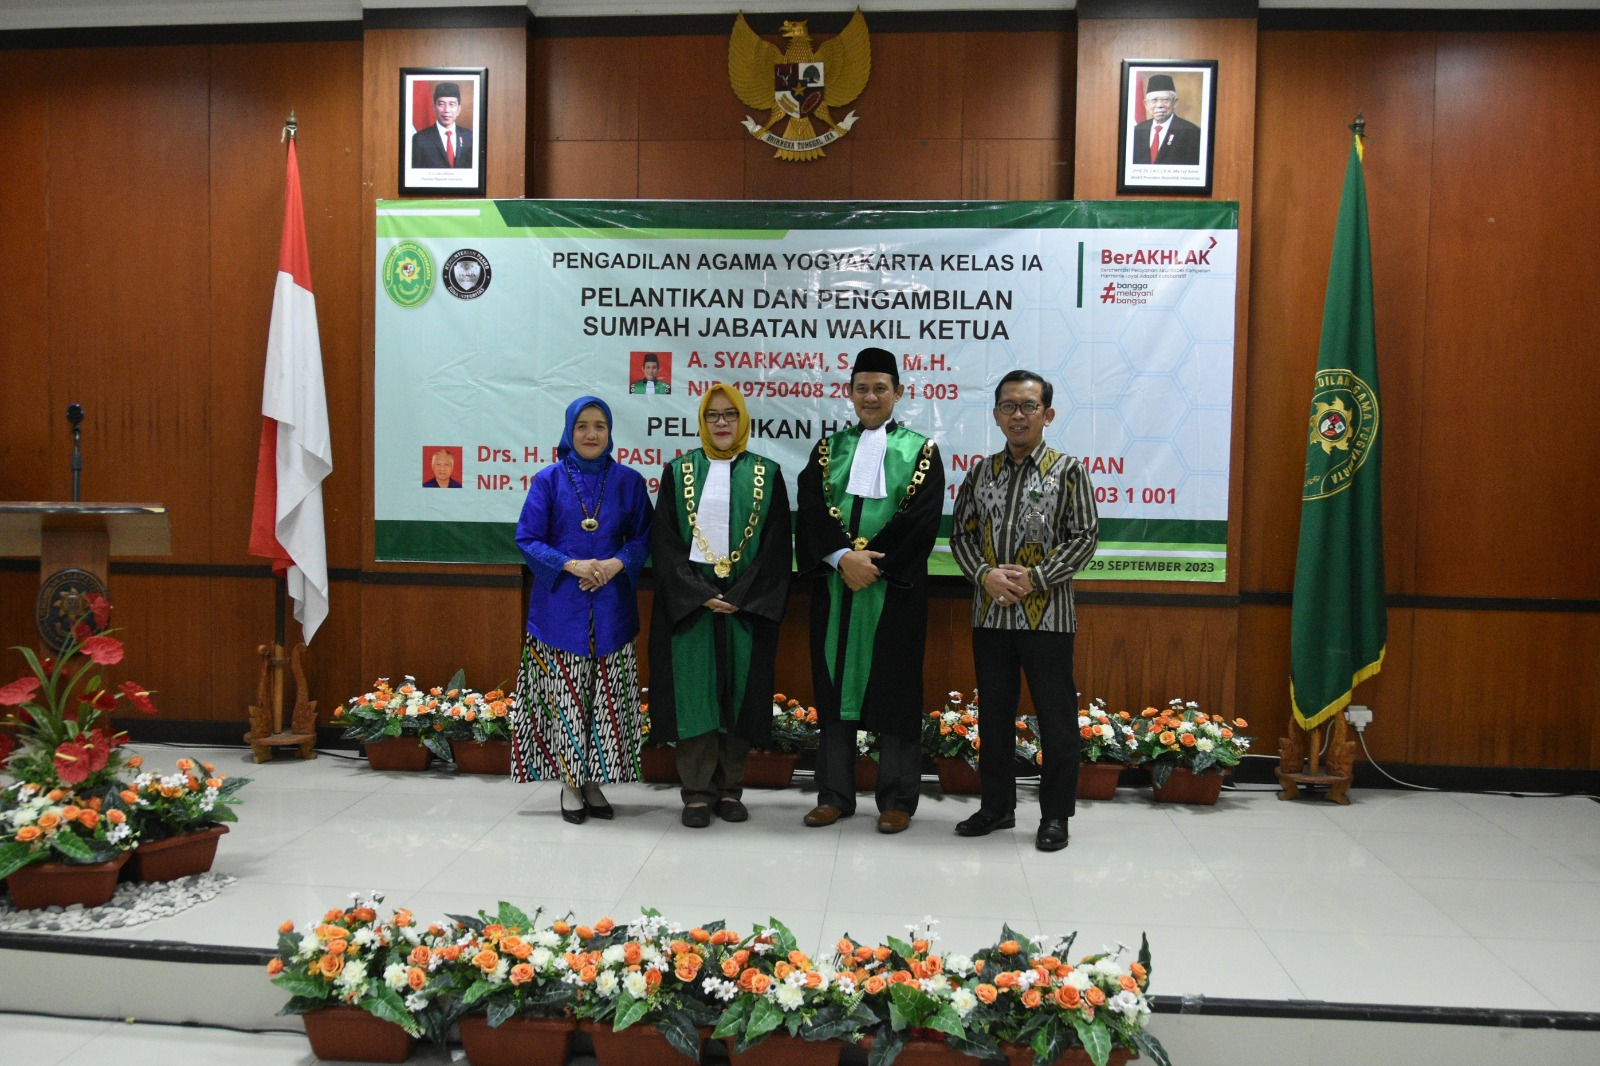 Ketua Pengadilan Negeri Yogyakarta Menghadiri Pelantikan dan Pengambilan Sumpah Jabatan Wakil Ketua Pengadilan Agama Yogyakarta 